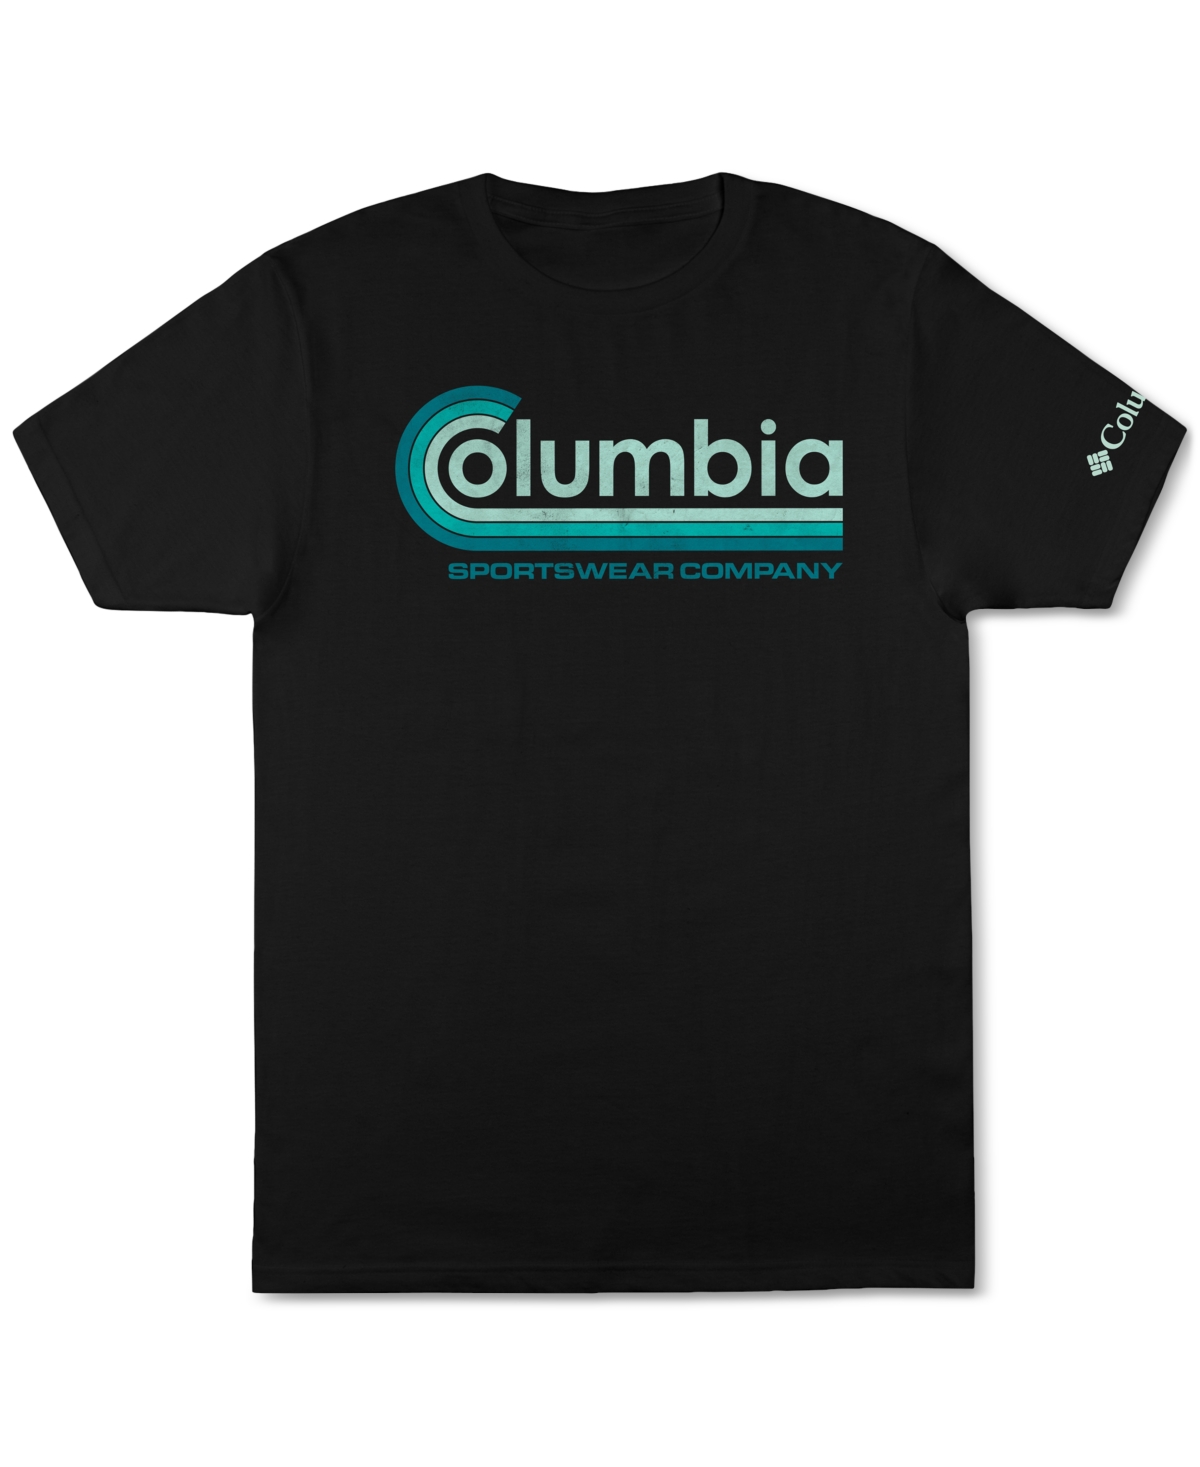 Shop Columbia Men's Retro Sportswear Company Graphic T-shirt In Black